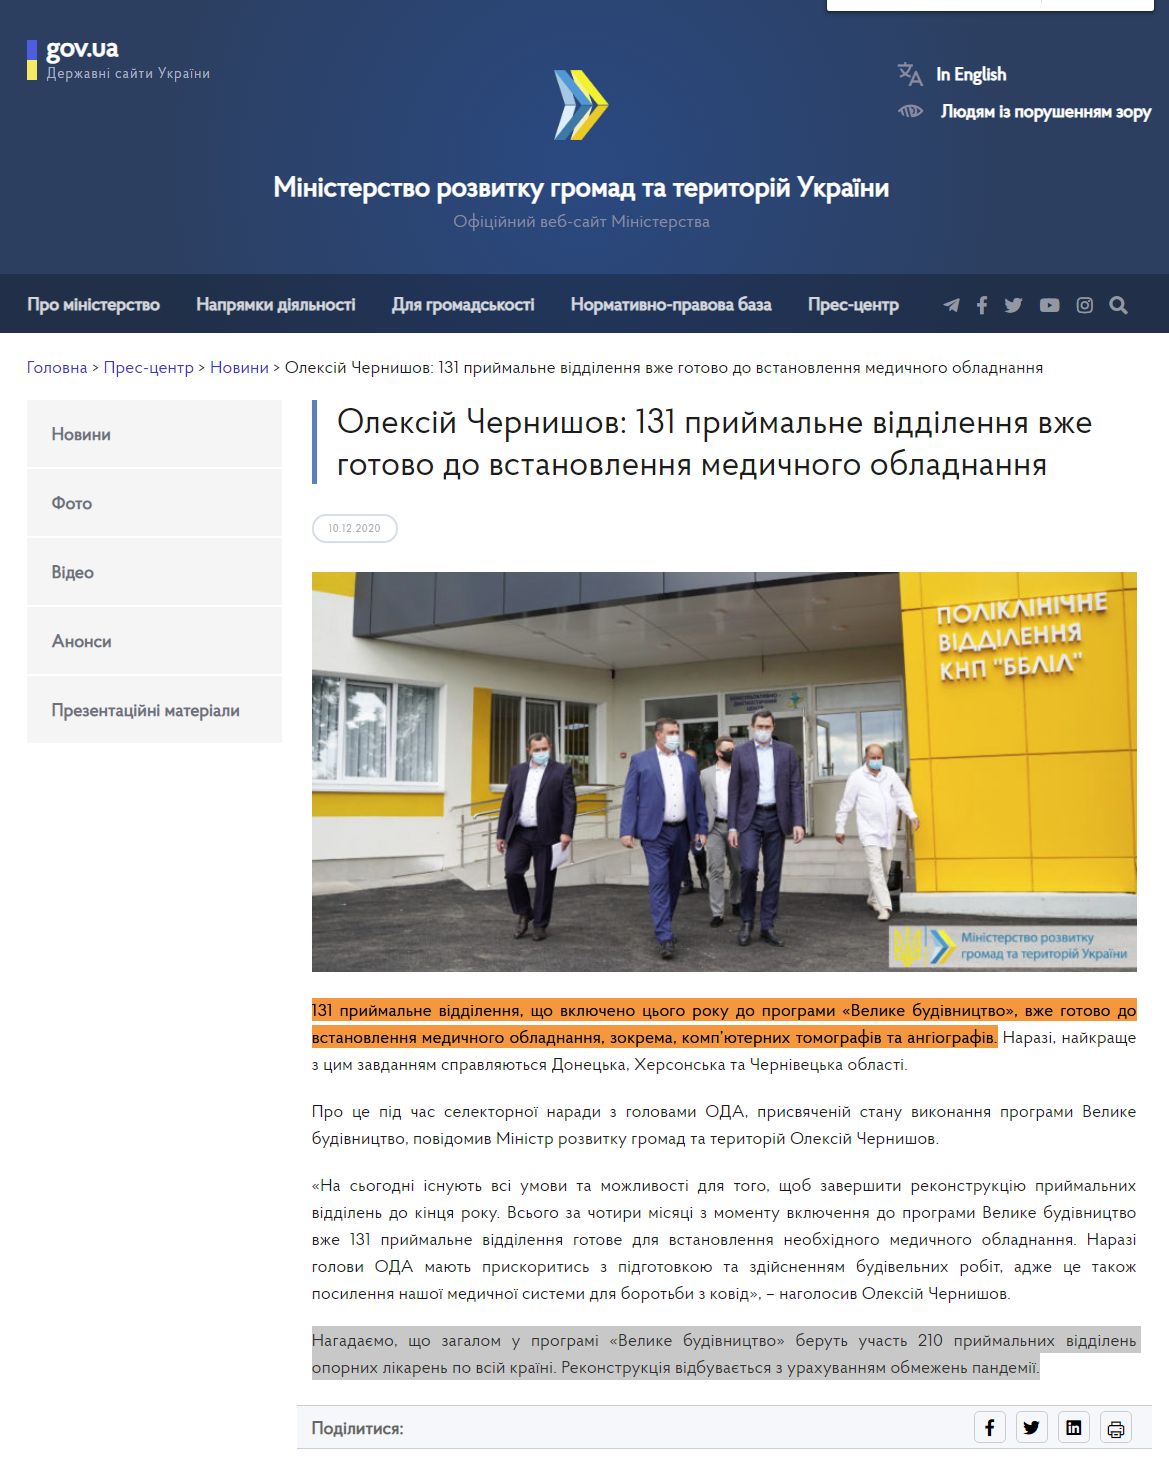 https://www.minregion.gov.ua/press/news/oleksij-chernyshov-131-pryjmalne-viddilennya-vzhe-gotovo-do-vstanovlennya-medychnogo-obladnannya/